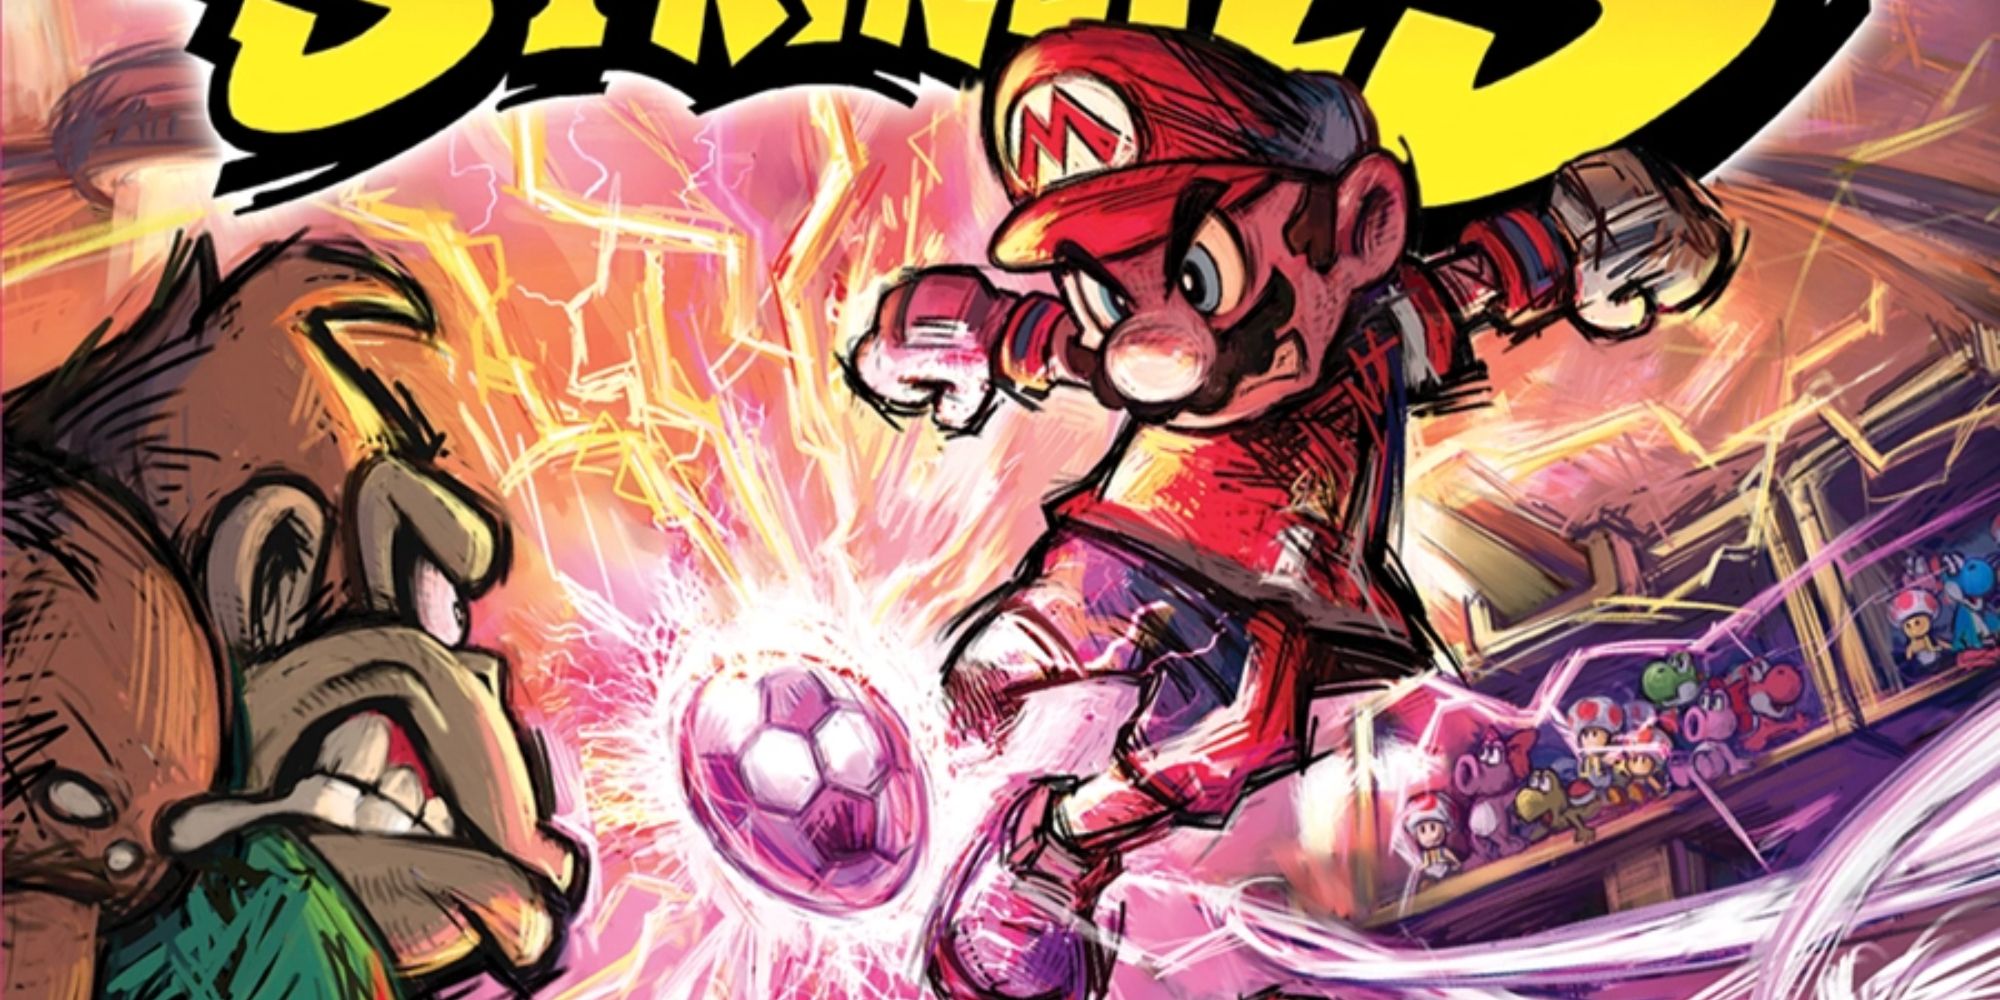 Mario kicking a soccer ball at Donkey Kong